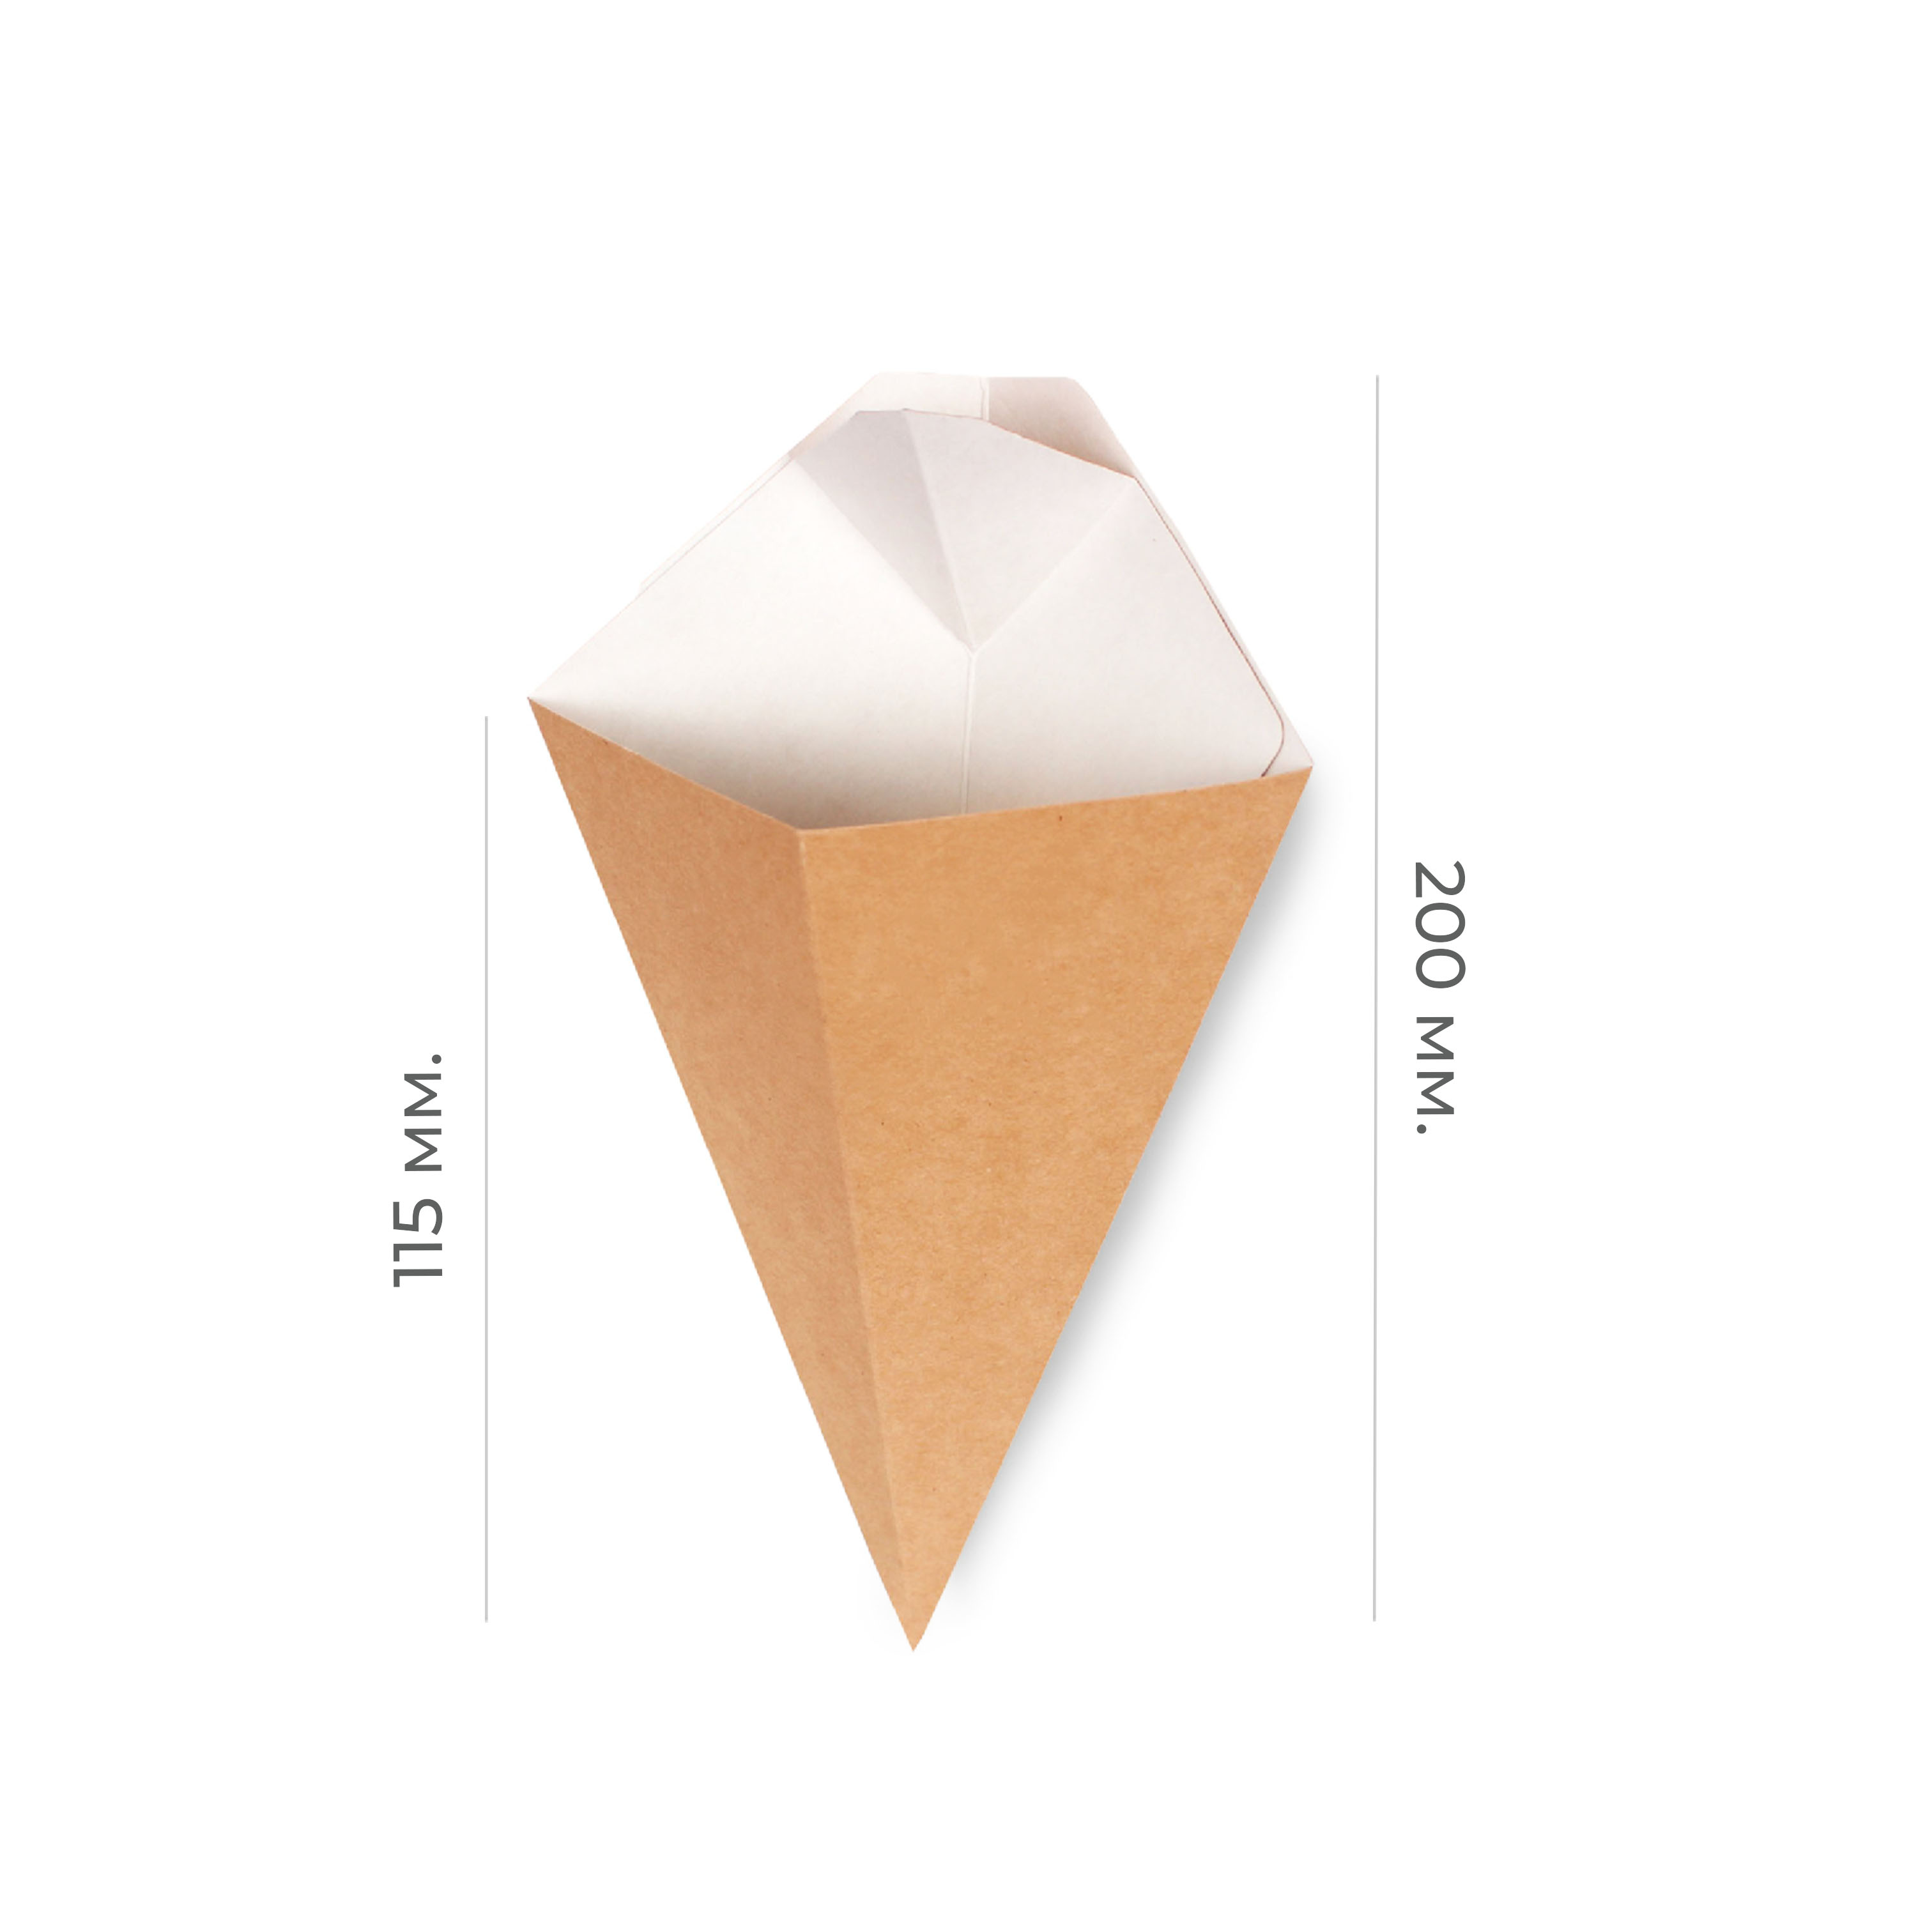 Конусная упаковка "Crepe Cone L" для картофеля фри 115*200мм (60/600)